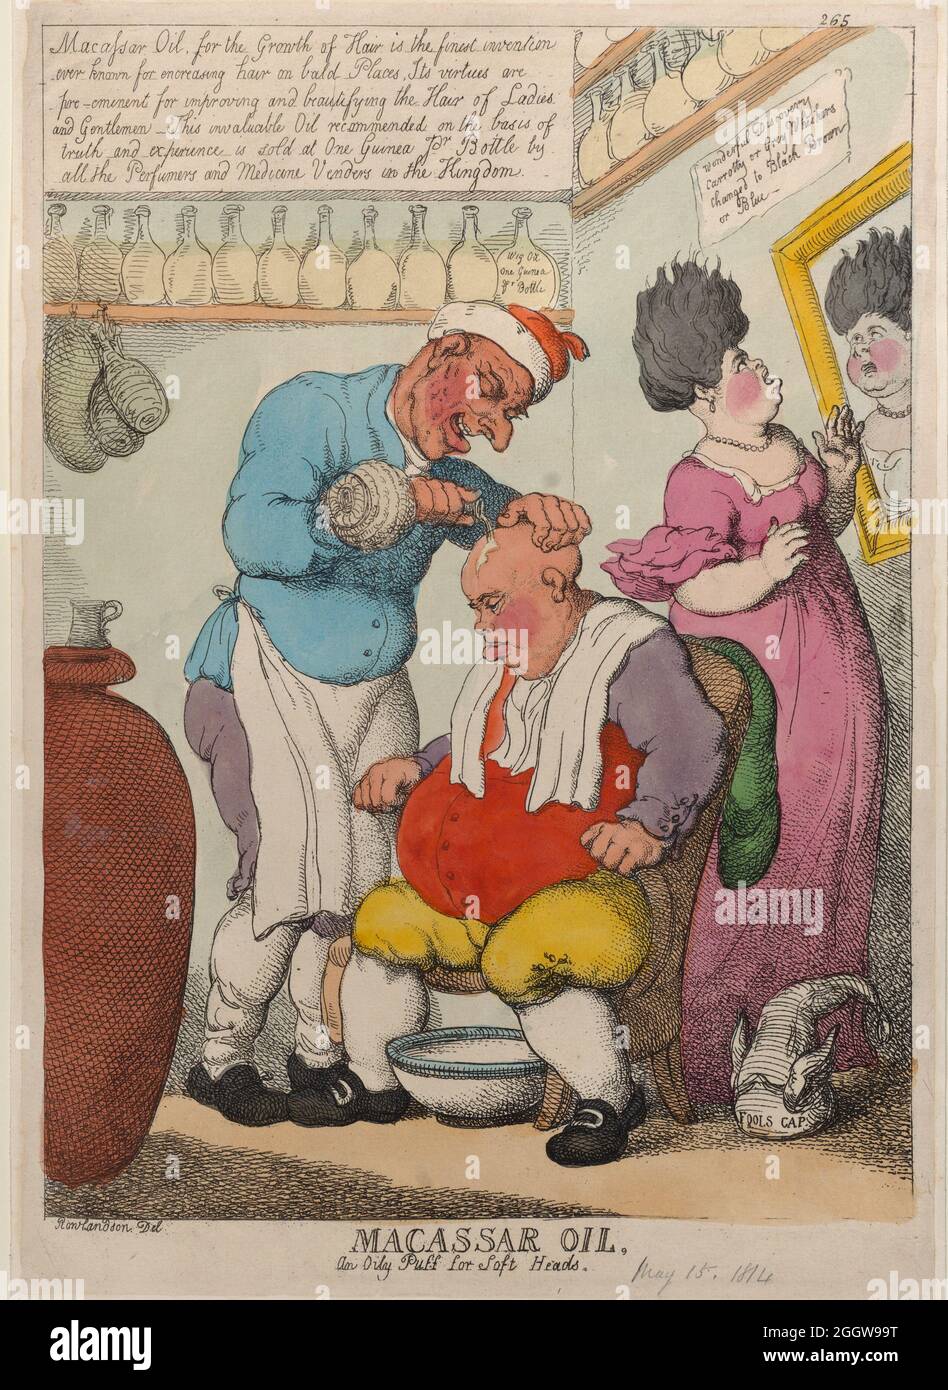 Künstler: Thomas Rowlandson (1756-1827) ein englischer Künstler und Karikaturist der georgischen Ära. Als sozialer Beobachter war er ein produktiver Künstler und Druckerei. Quelle: Thomas Rowlandson/Alamy Stockfoto